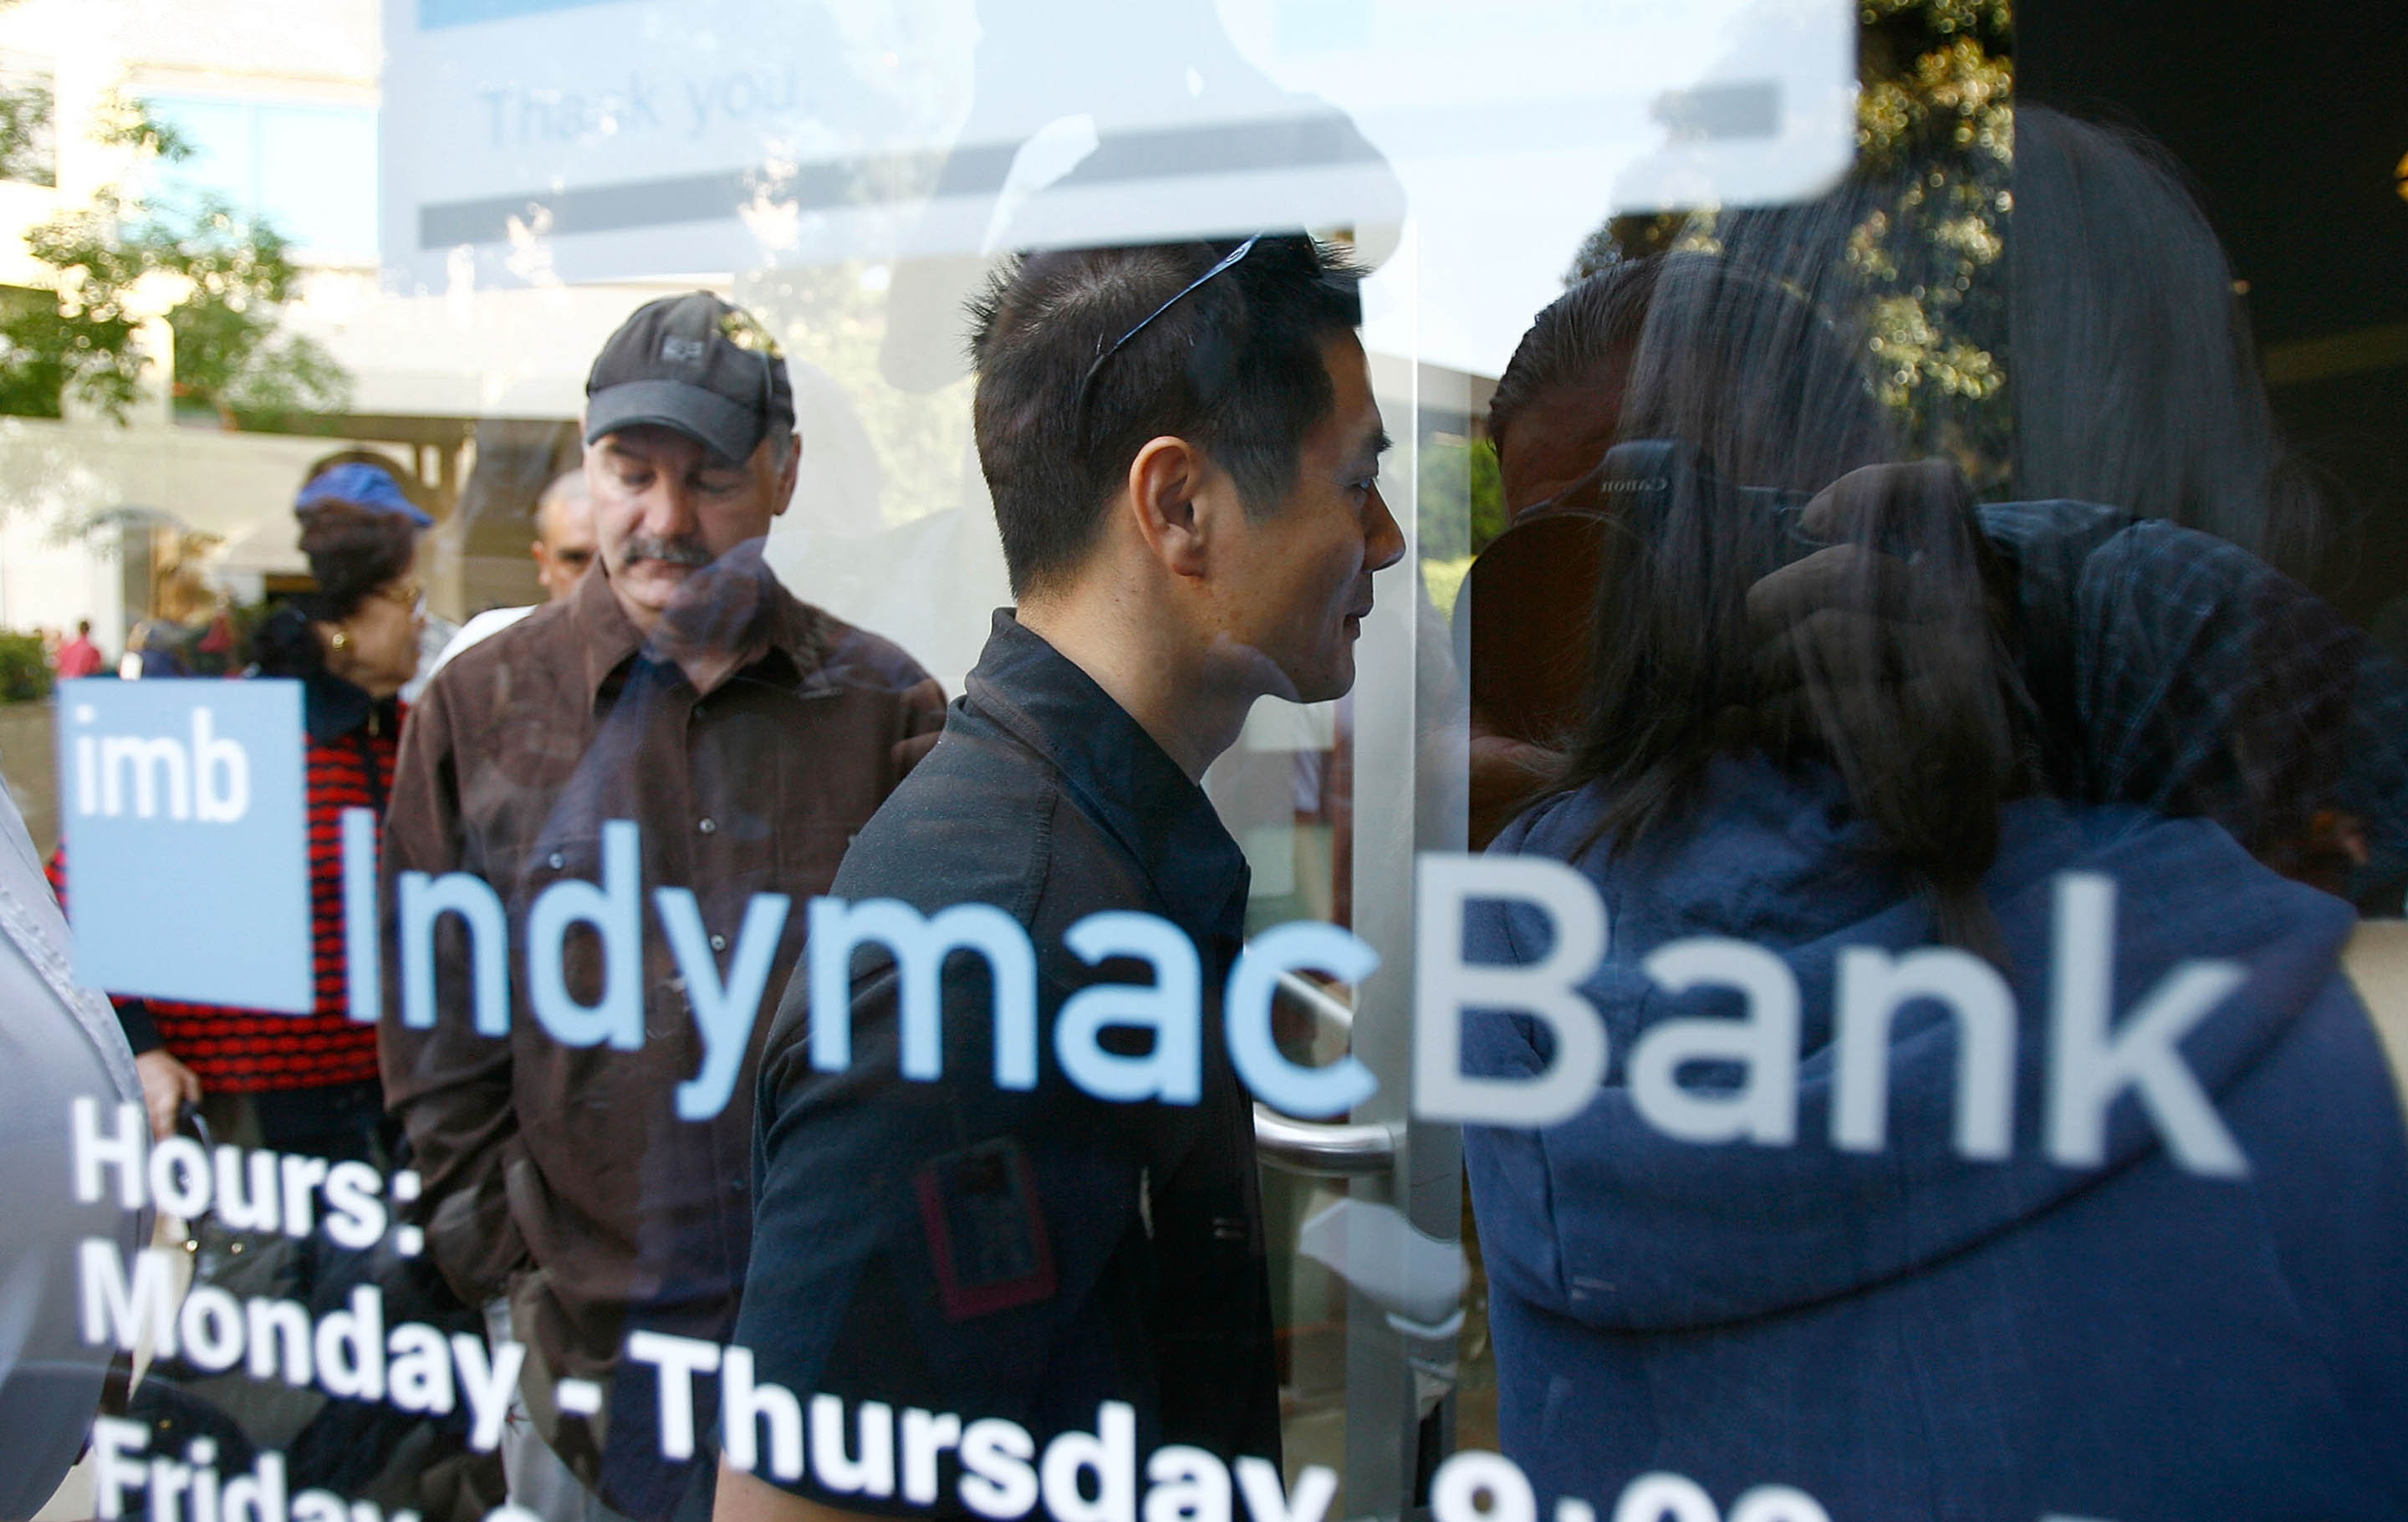 Image of people outside of IndyMac Bank